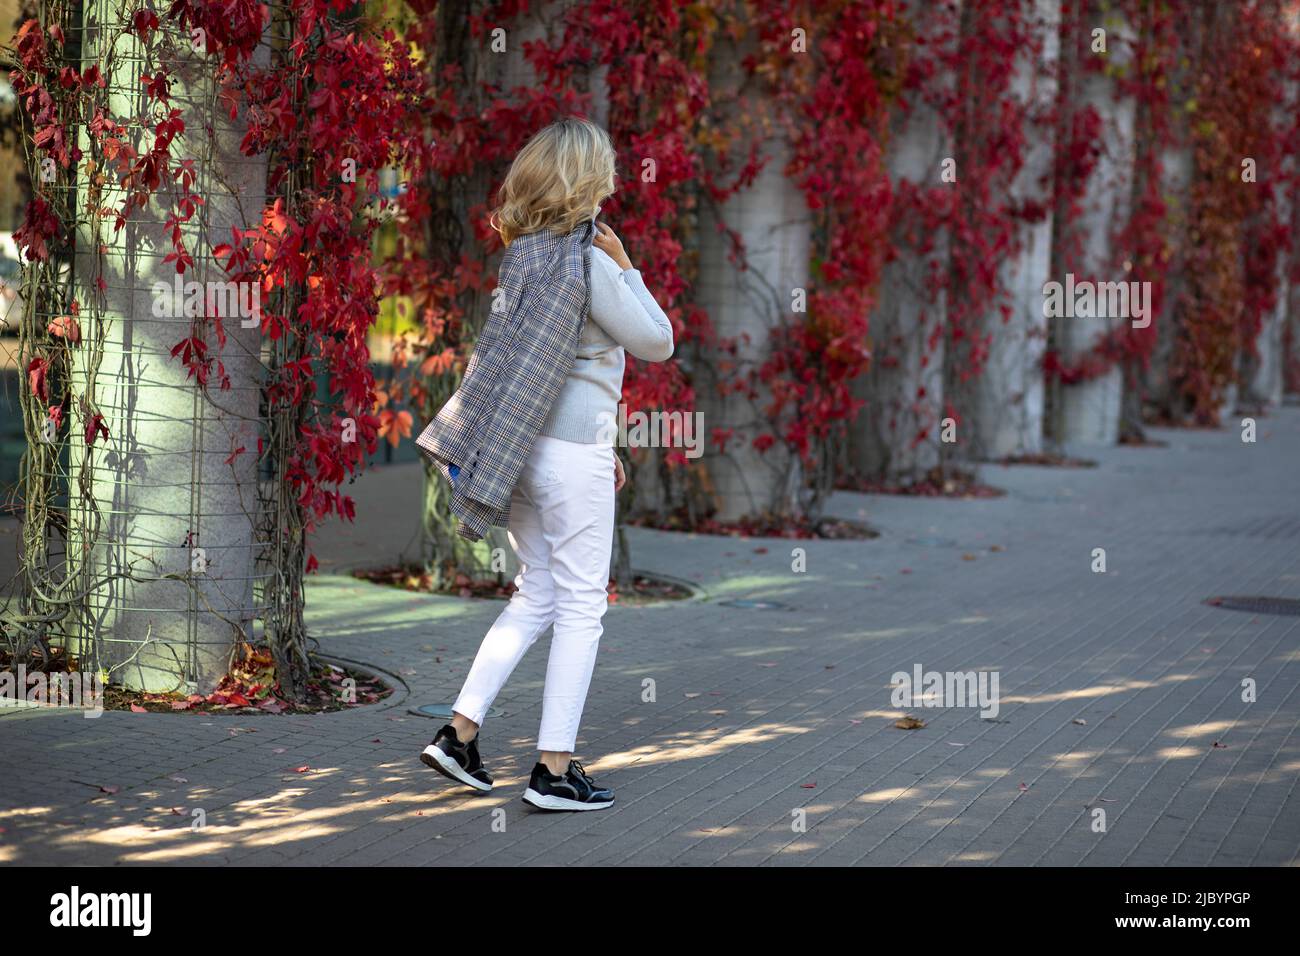 Die elegante blonde 35-40-Jährige in weißen Hosen und Jacken geht zu Fuß durch die herbstliche Stadt, die mit leuchtend roten Blättern von überwuchertem Efeu geschmückt ist Stockfoto